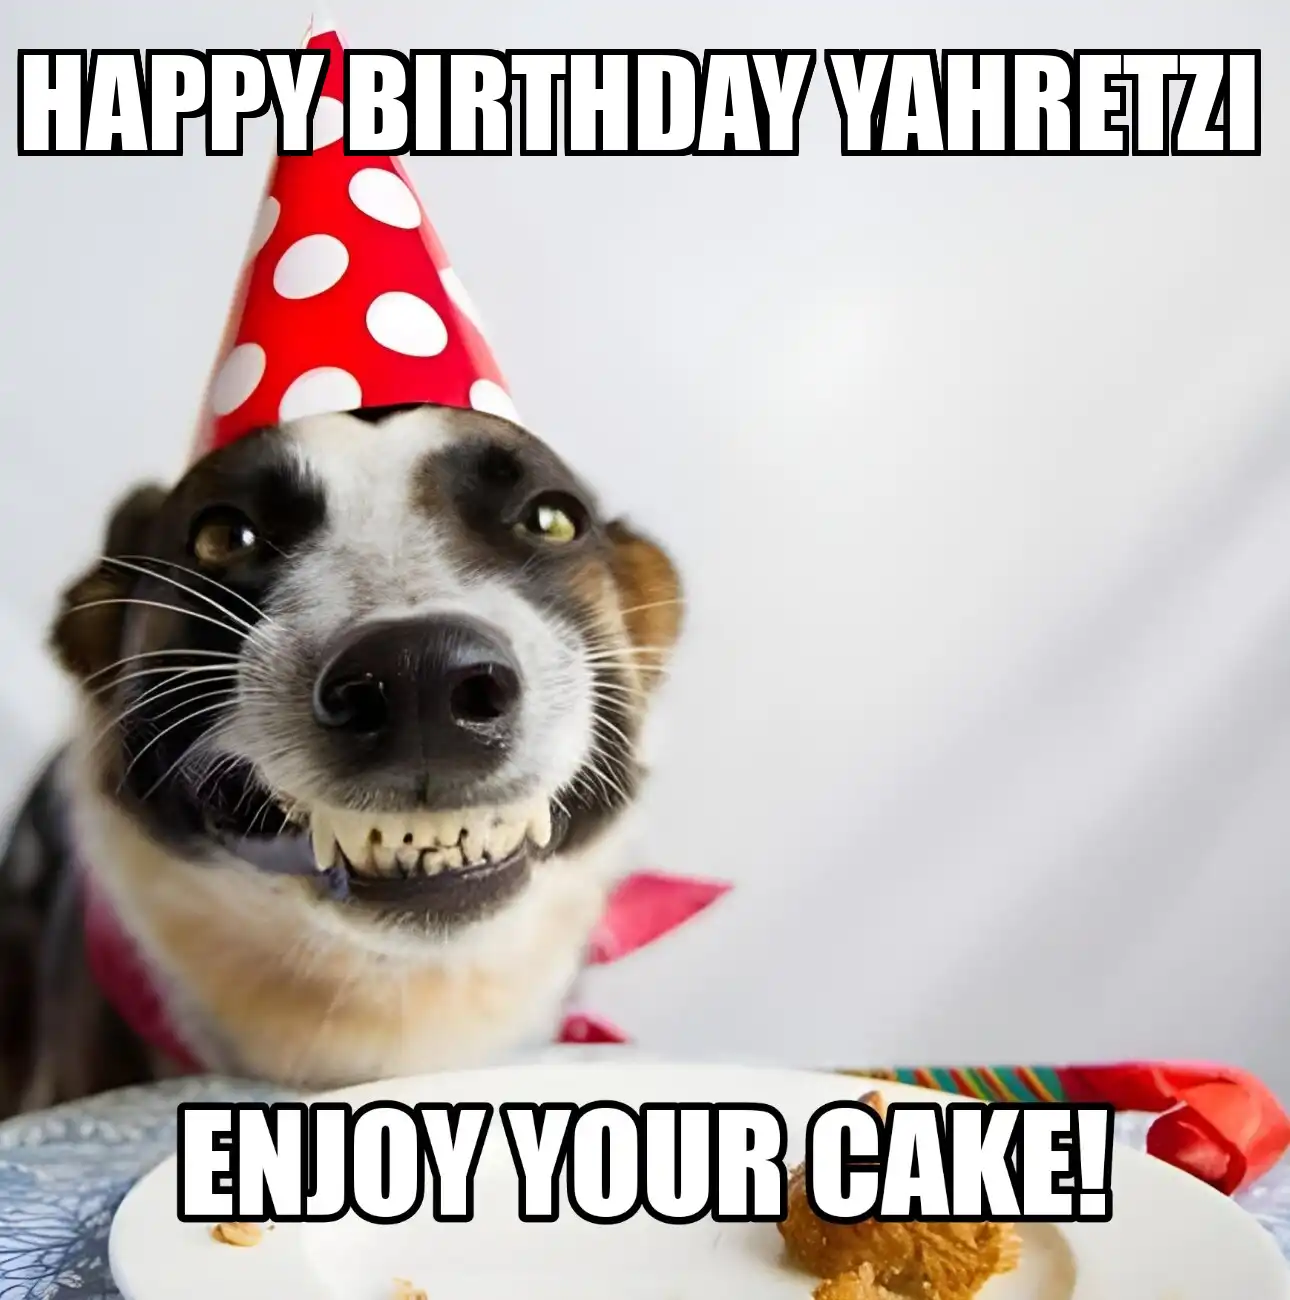 Happy Birthday Yahretzi Enjoy Your Cake Dog Meme